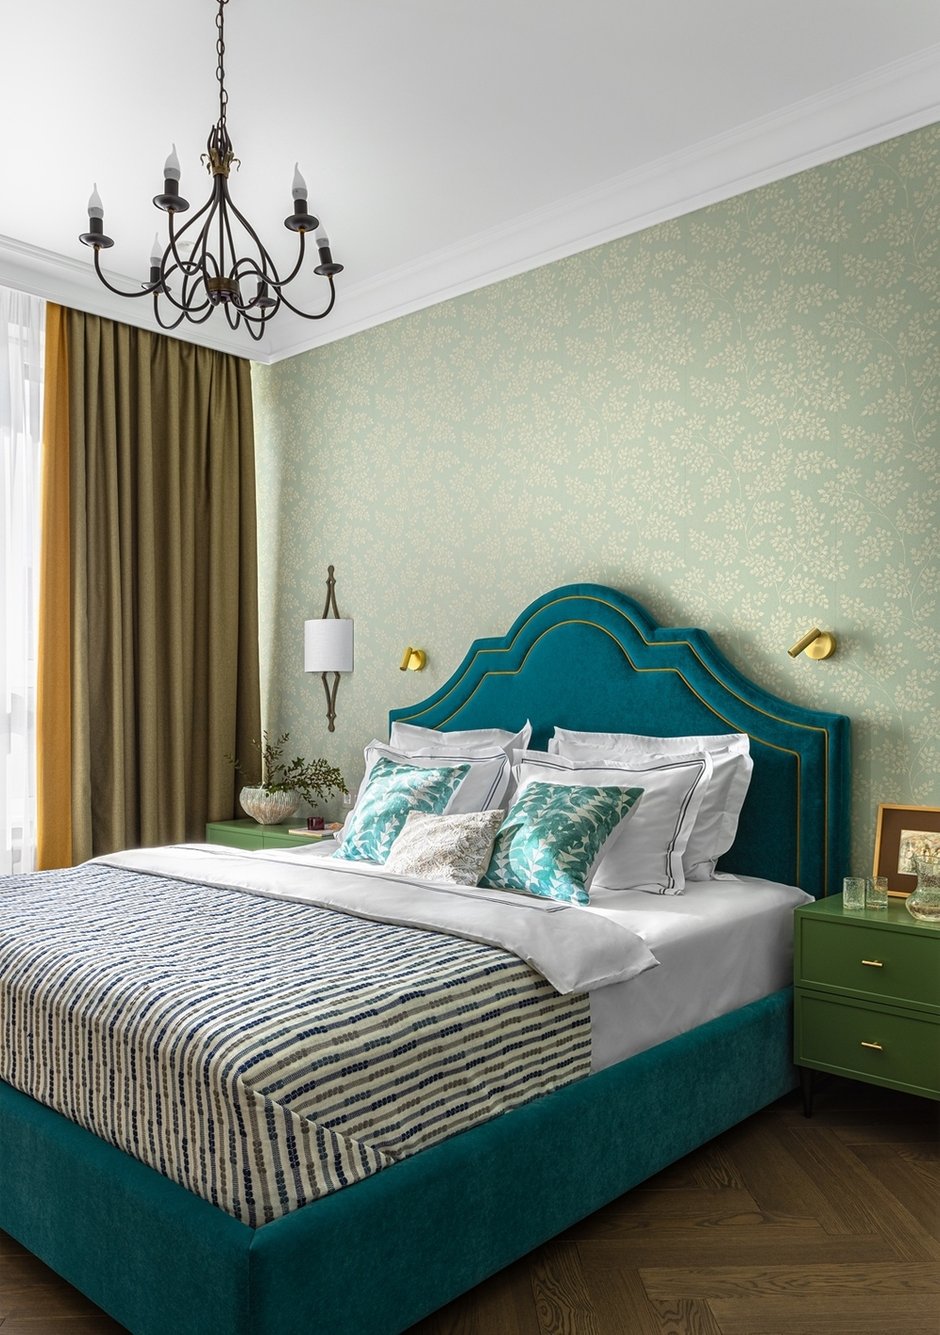 Для спальни выбрали зеленые обои с растительным принтом и бирюзовую кровать, которая смотрится очень эффектно.